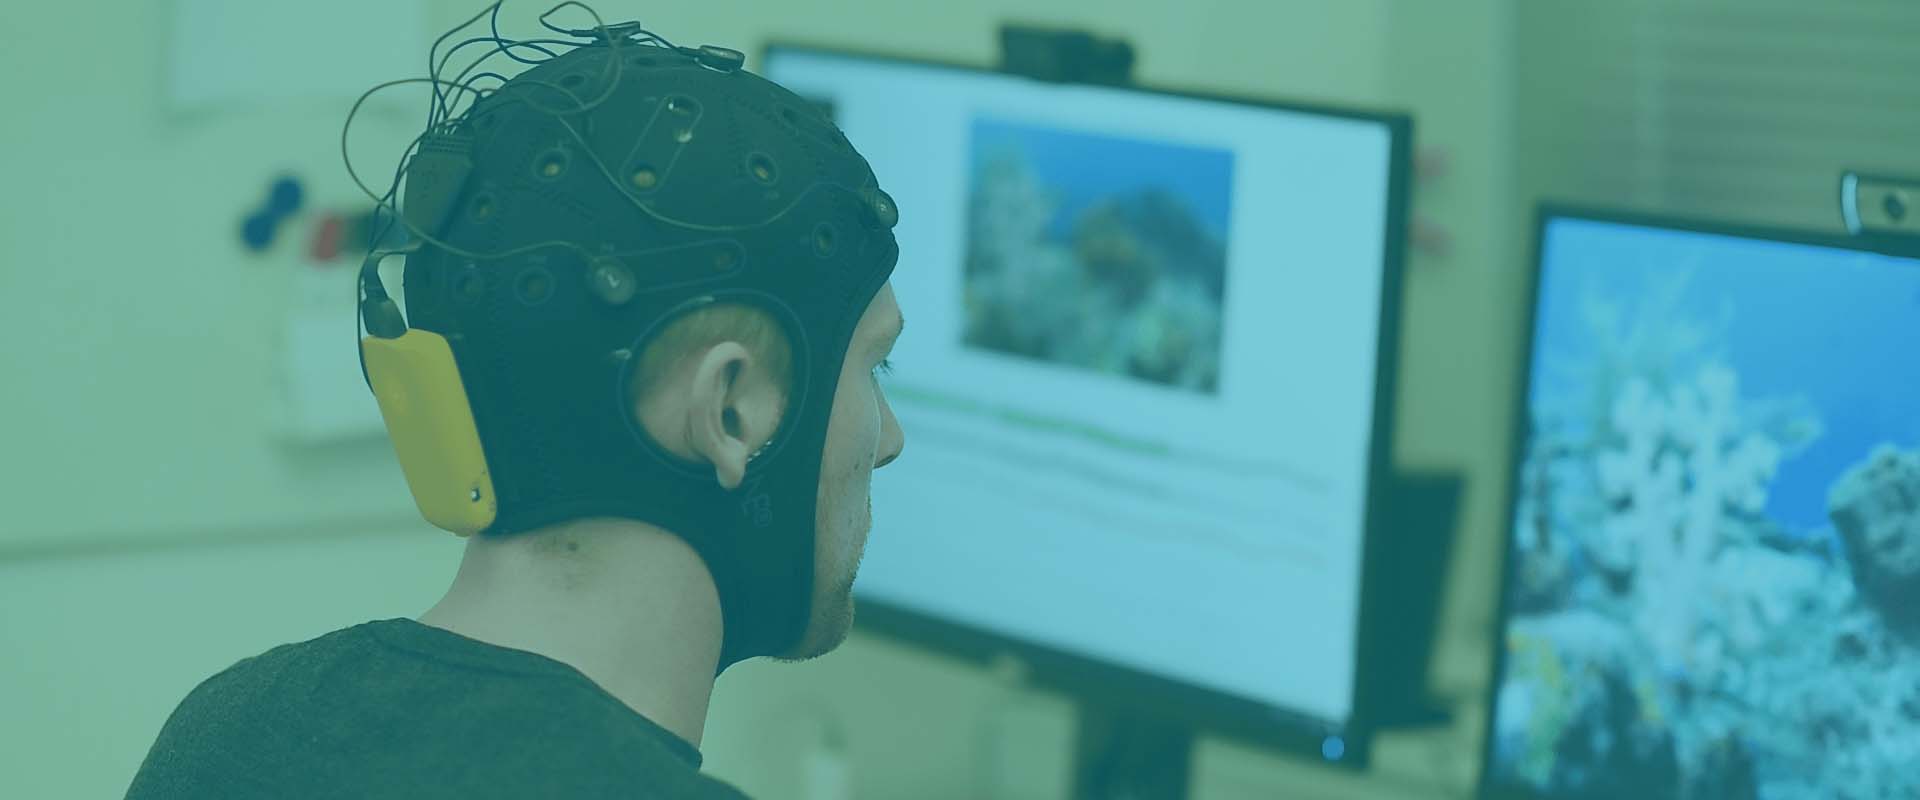 Evde EEG Çekimi Nasıl Yapılır